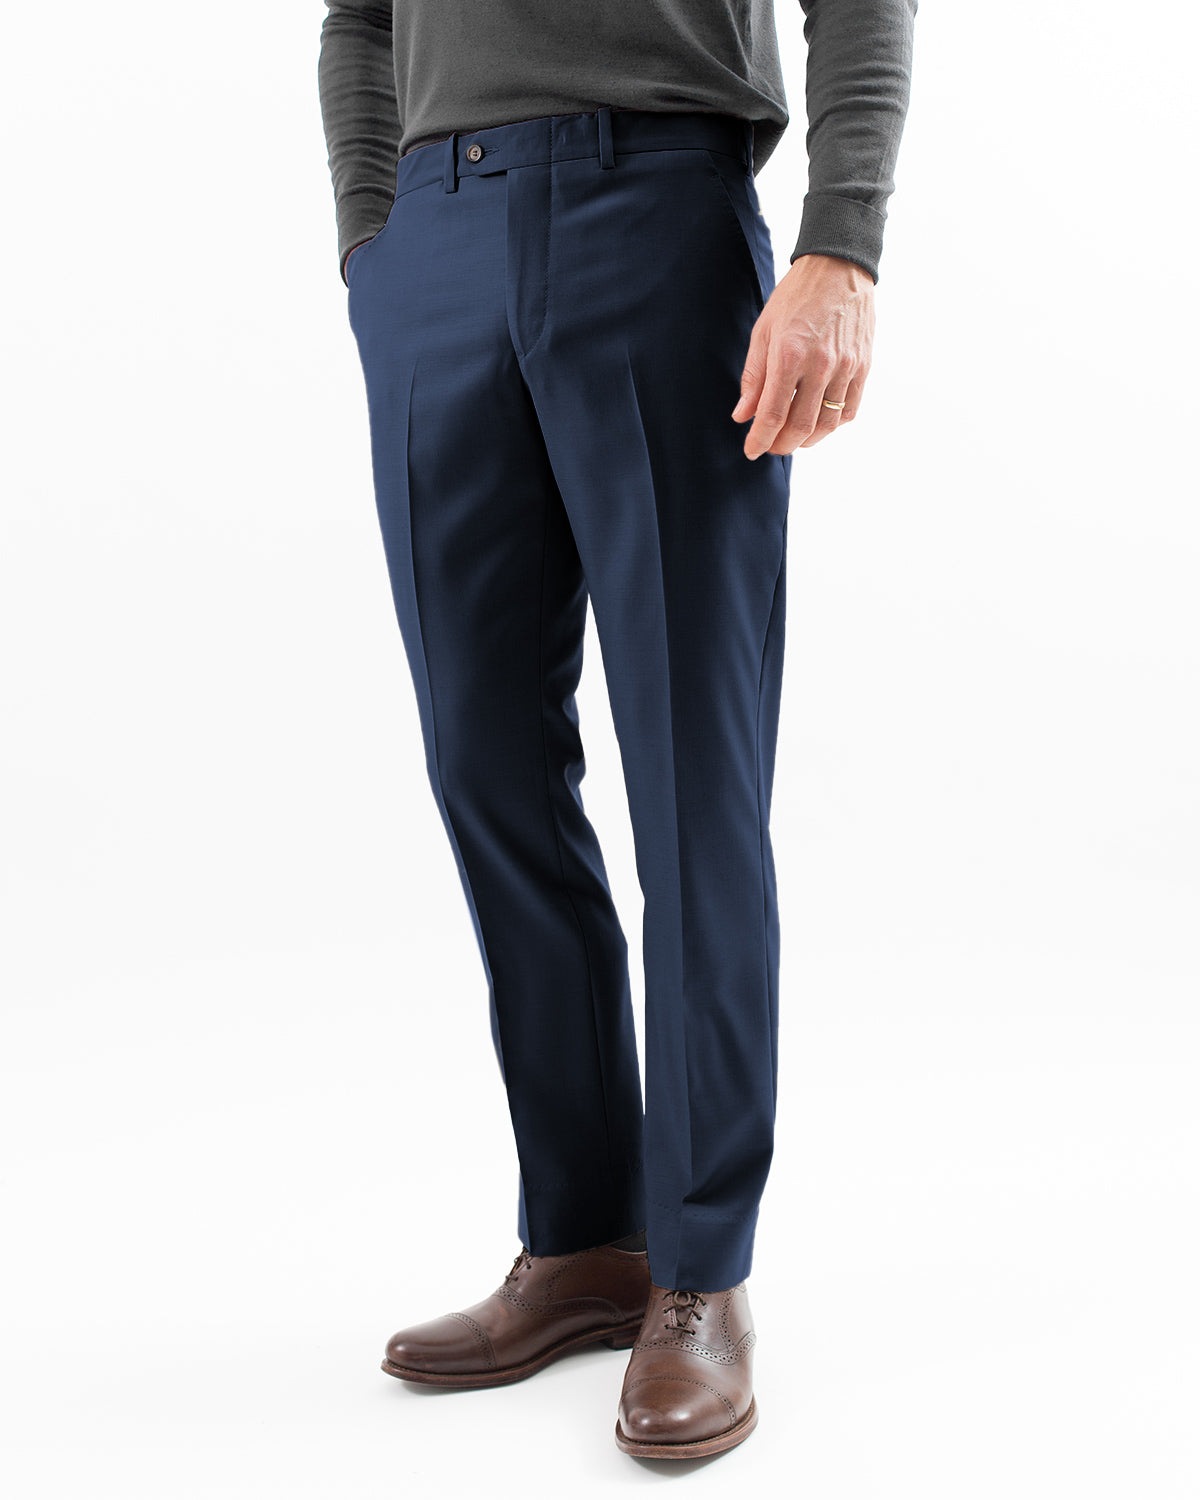 Hertling Super – Dress USA 120s Navy Trouser, Gabardine Wool